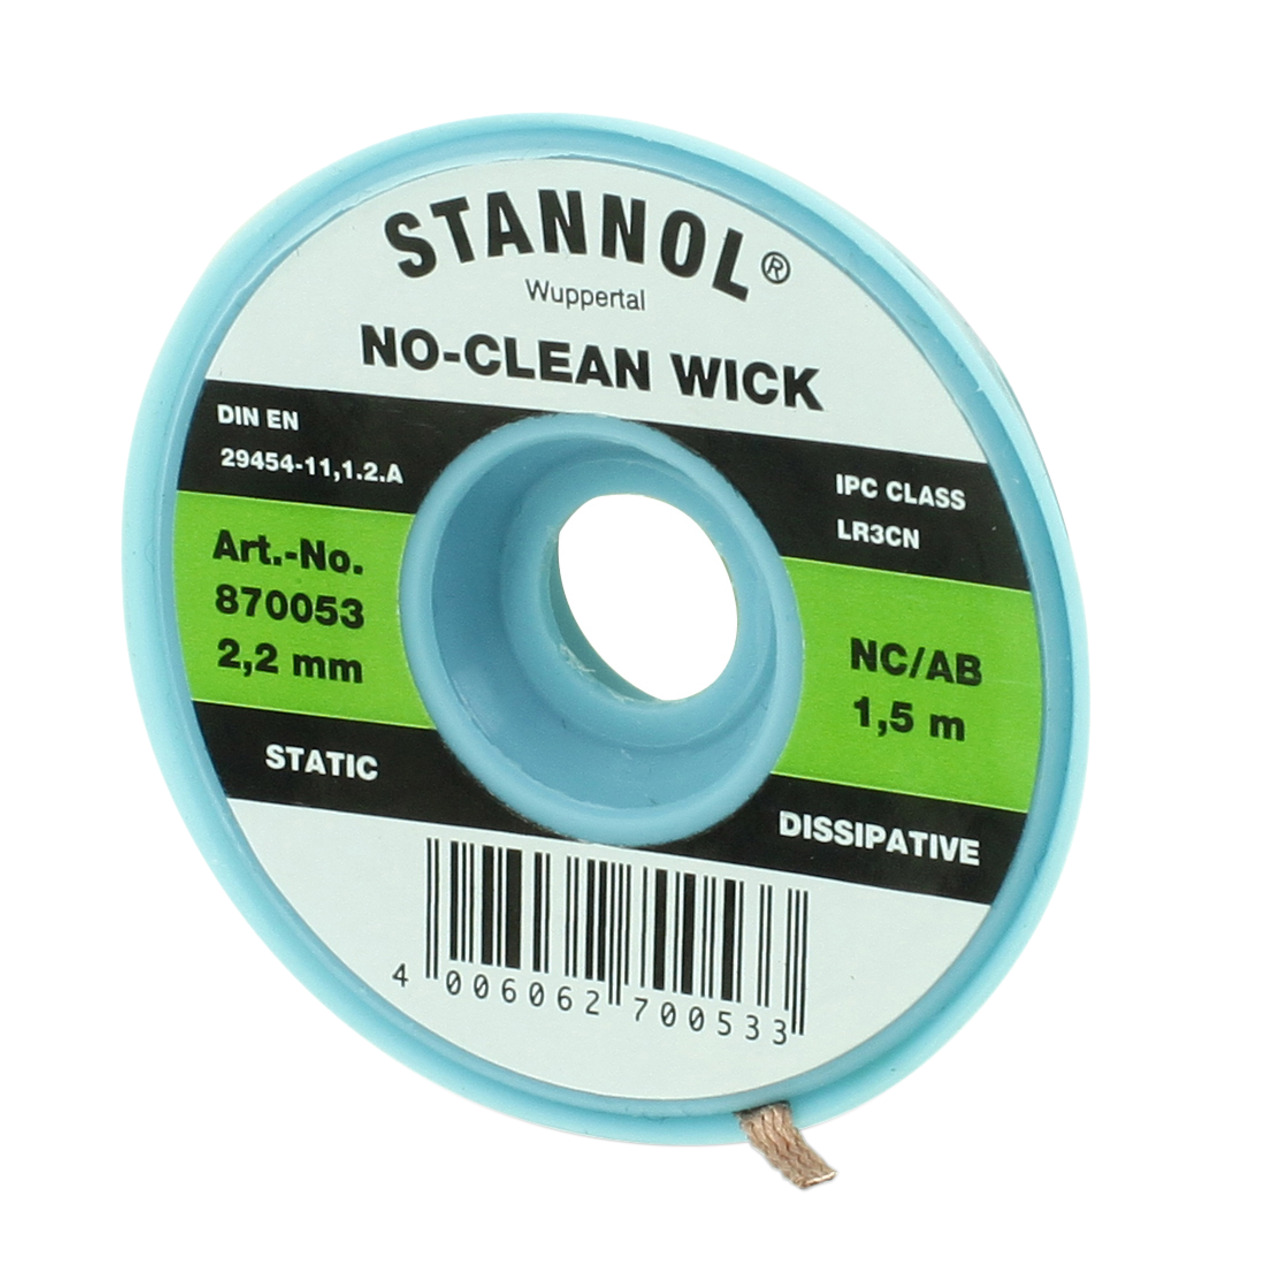 Stannol No-Clean Entltlitze- ESD-verpackt- 1-5 m lang- 2-2 mm breit